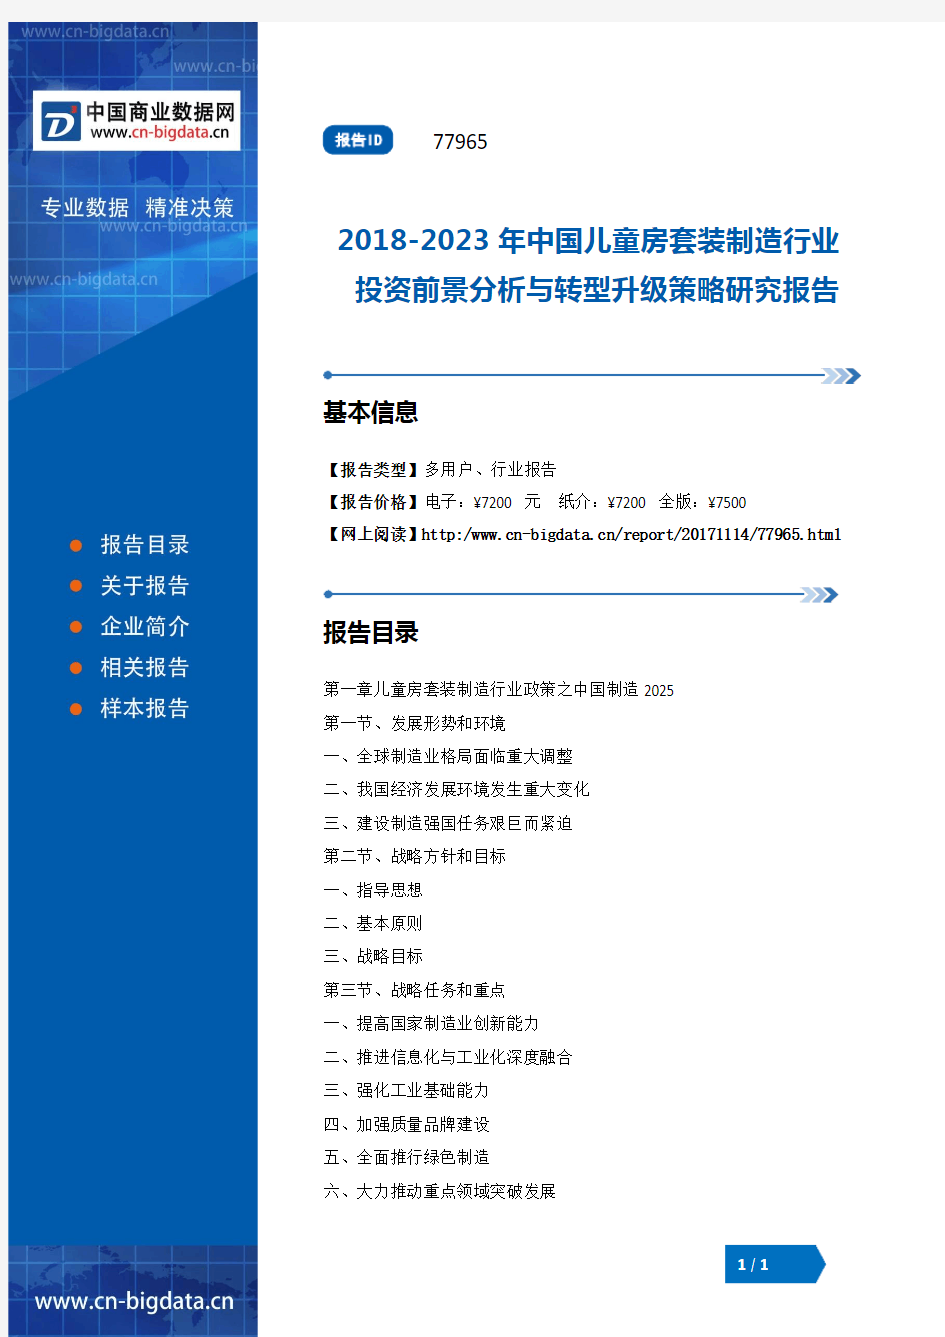 2018-2023年中国儿童房套装制造行业投资前景分析与转型升级策略研究报告